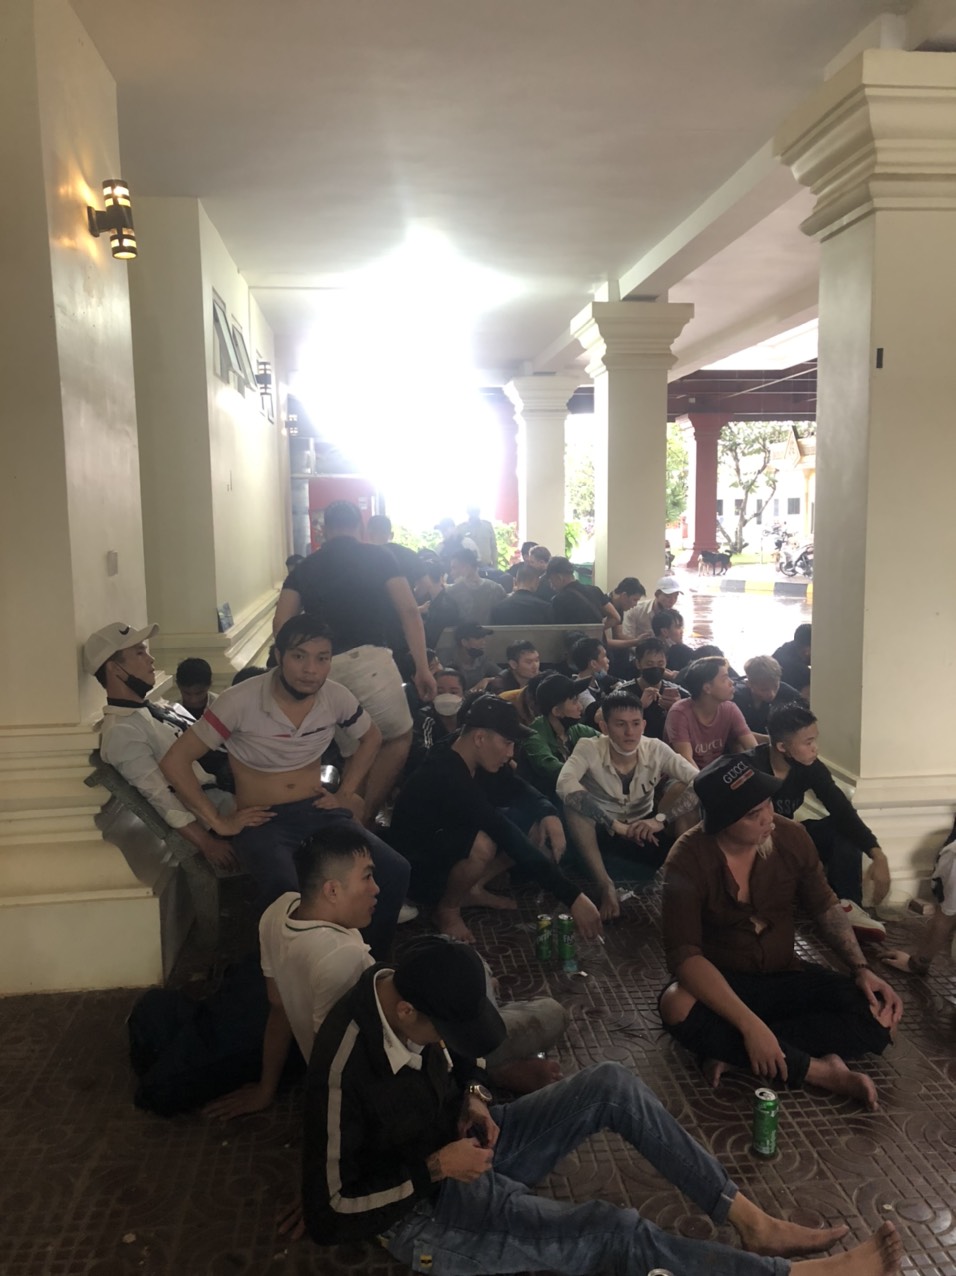 Tây Ninh: UBND tỉnh đã cử lực lượng hỗ trợ nhóm lao động bỏ chạy khỏi casino ở Campuchia - Ảnh 2.